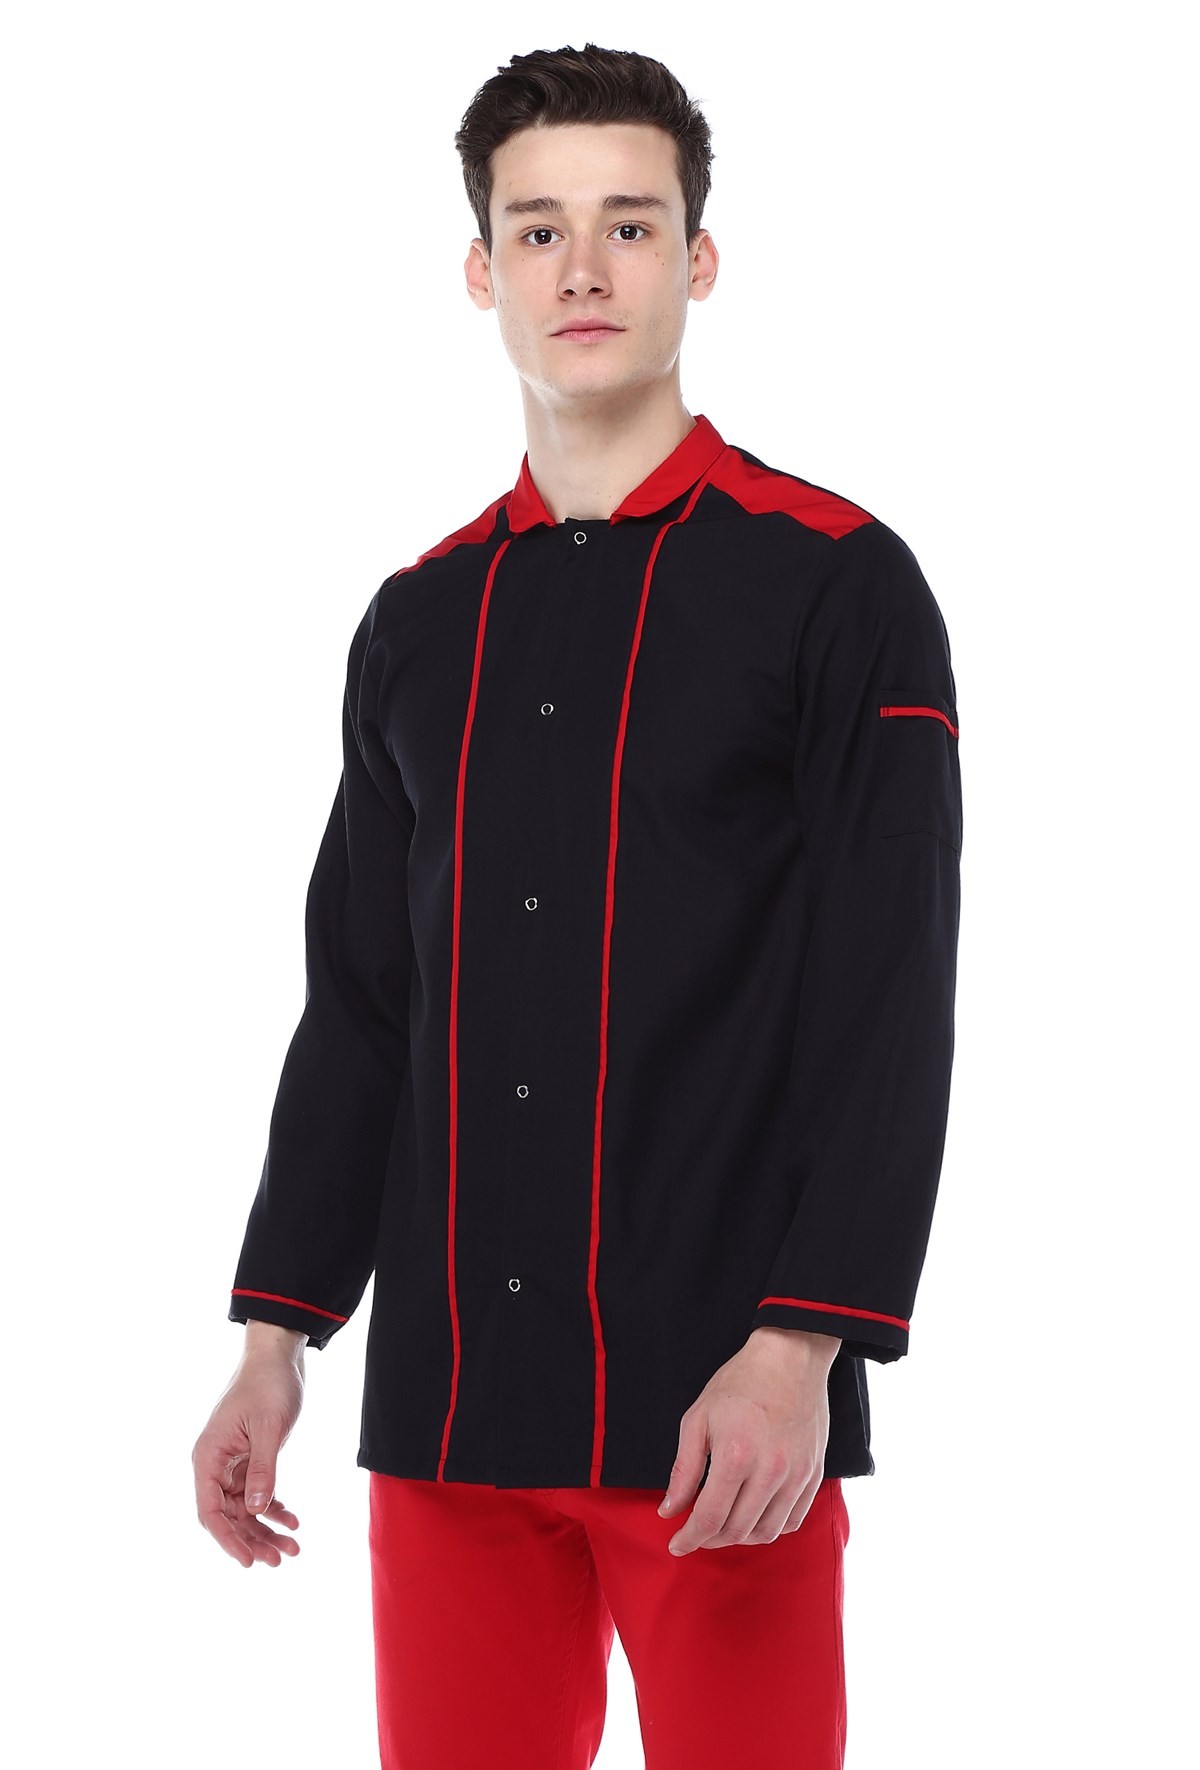 Siyah Kırmızı Aşçı Ceketi,Aşçı İş Elbisesi